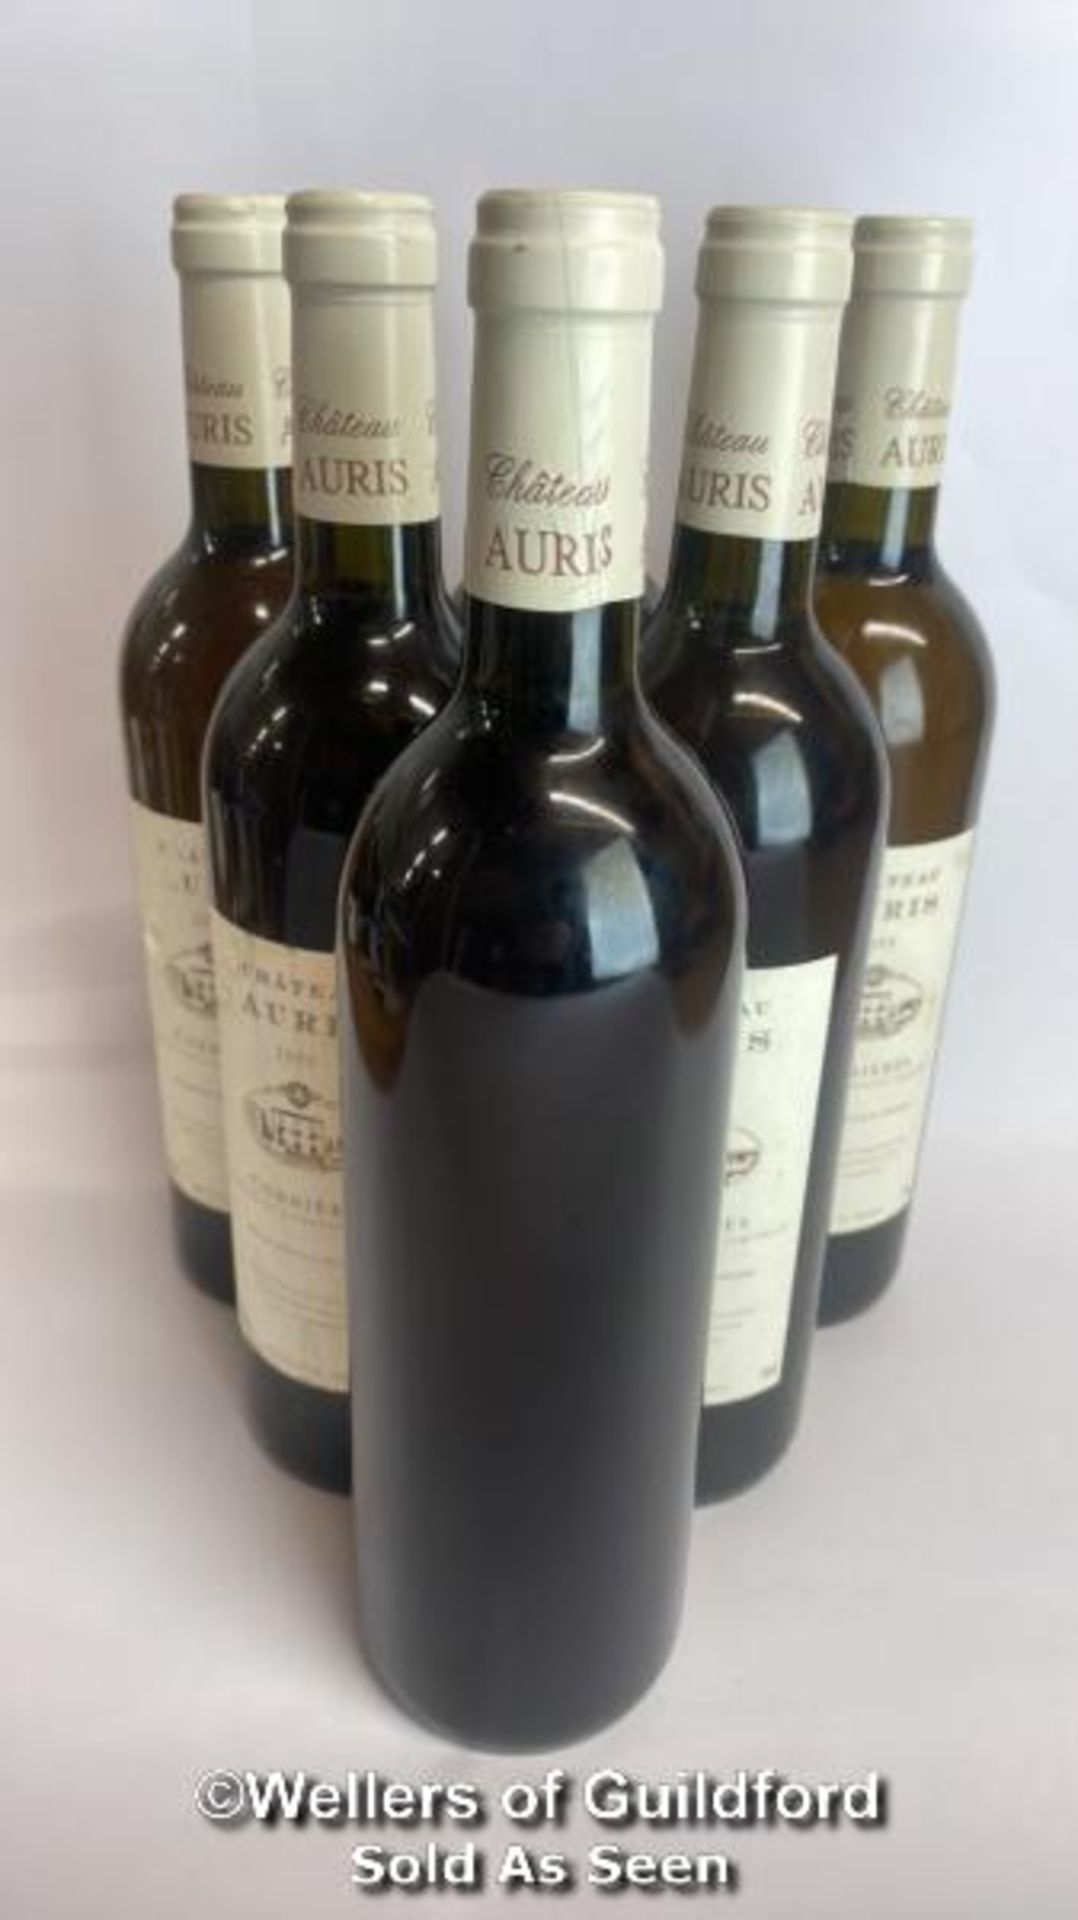 Six bottles of 1999 Chateau Auris Corbieres, Mis En Boutille Au Chateau, 75cl, 12.5% vol / Please - Image 6 of 8